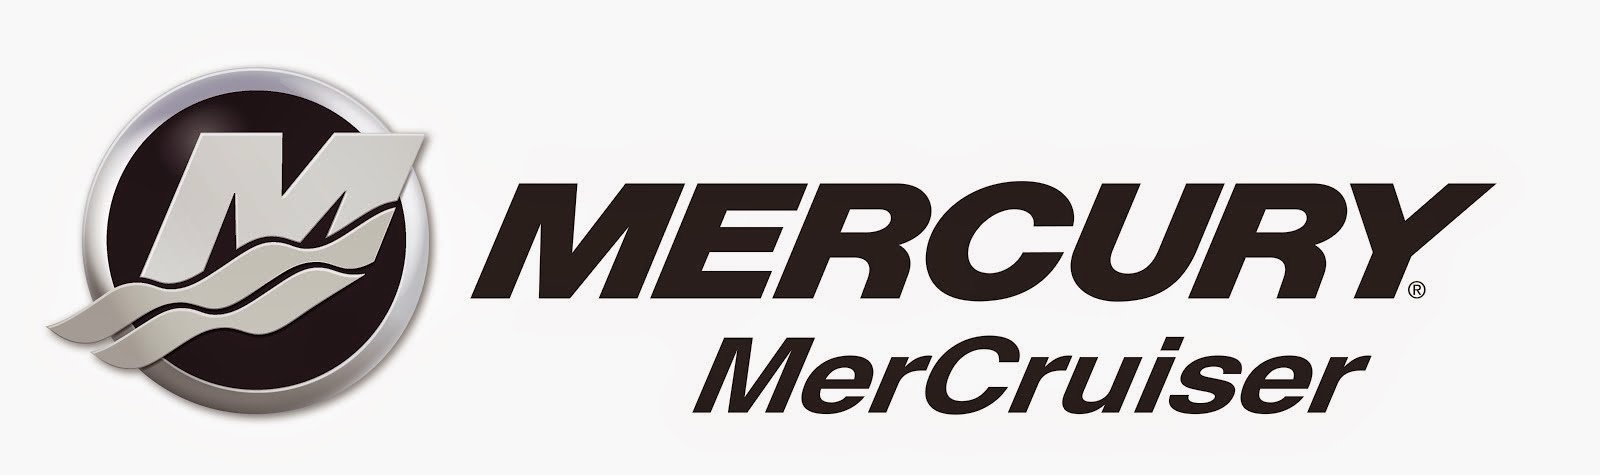 MerCruiser-logo